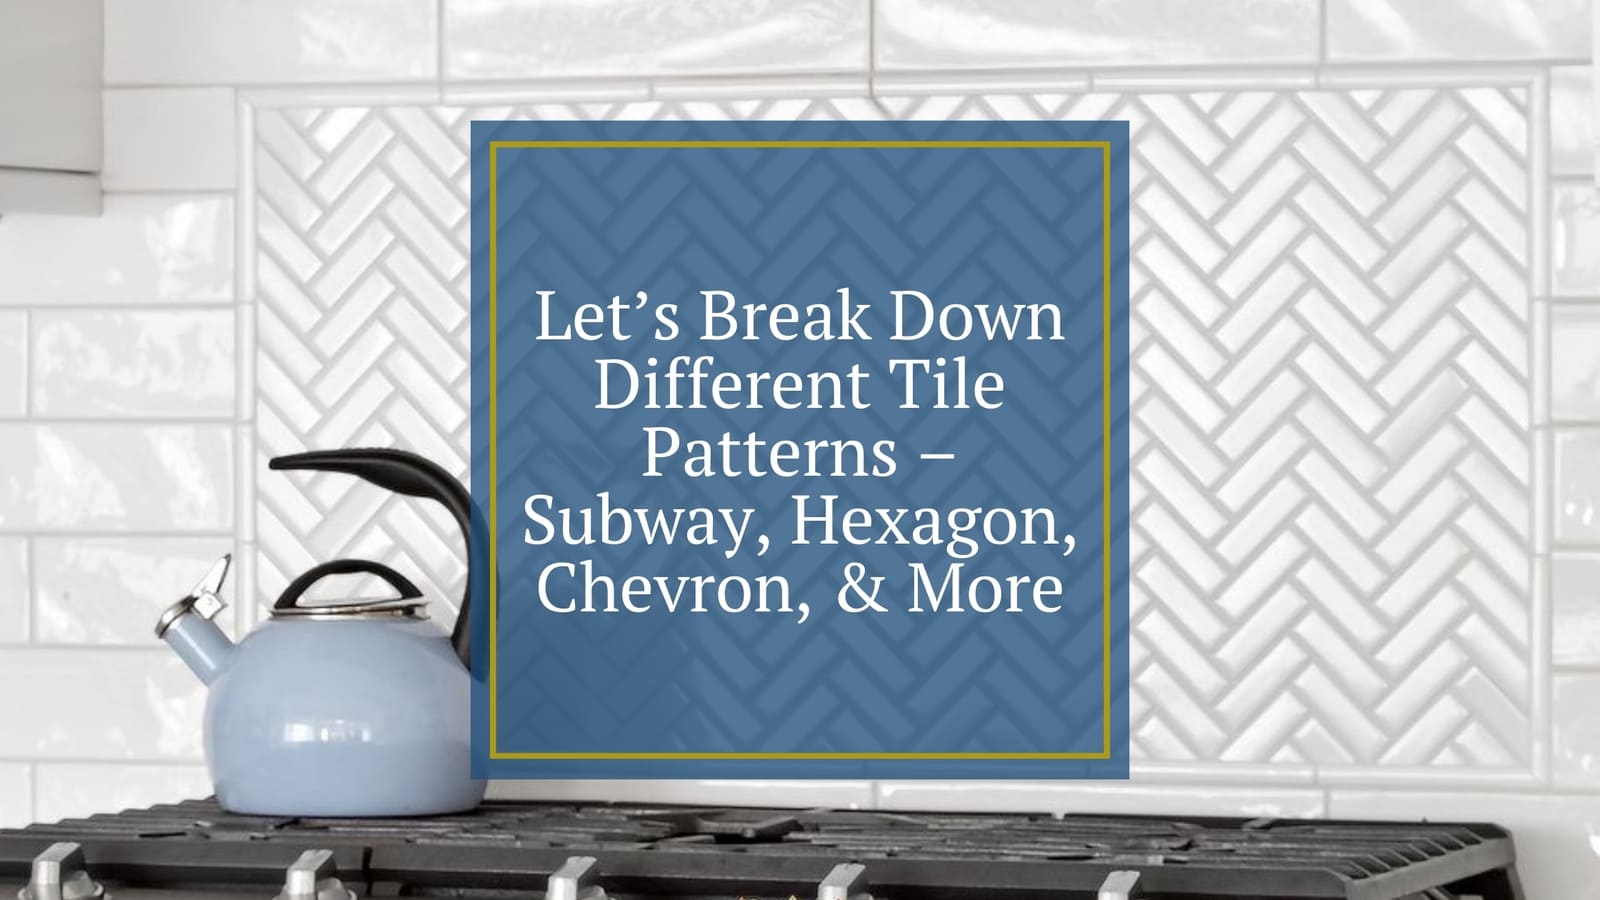 Let’s Break Down Different Tile Patterns – Subway, Hexagon, Chevron, & More